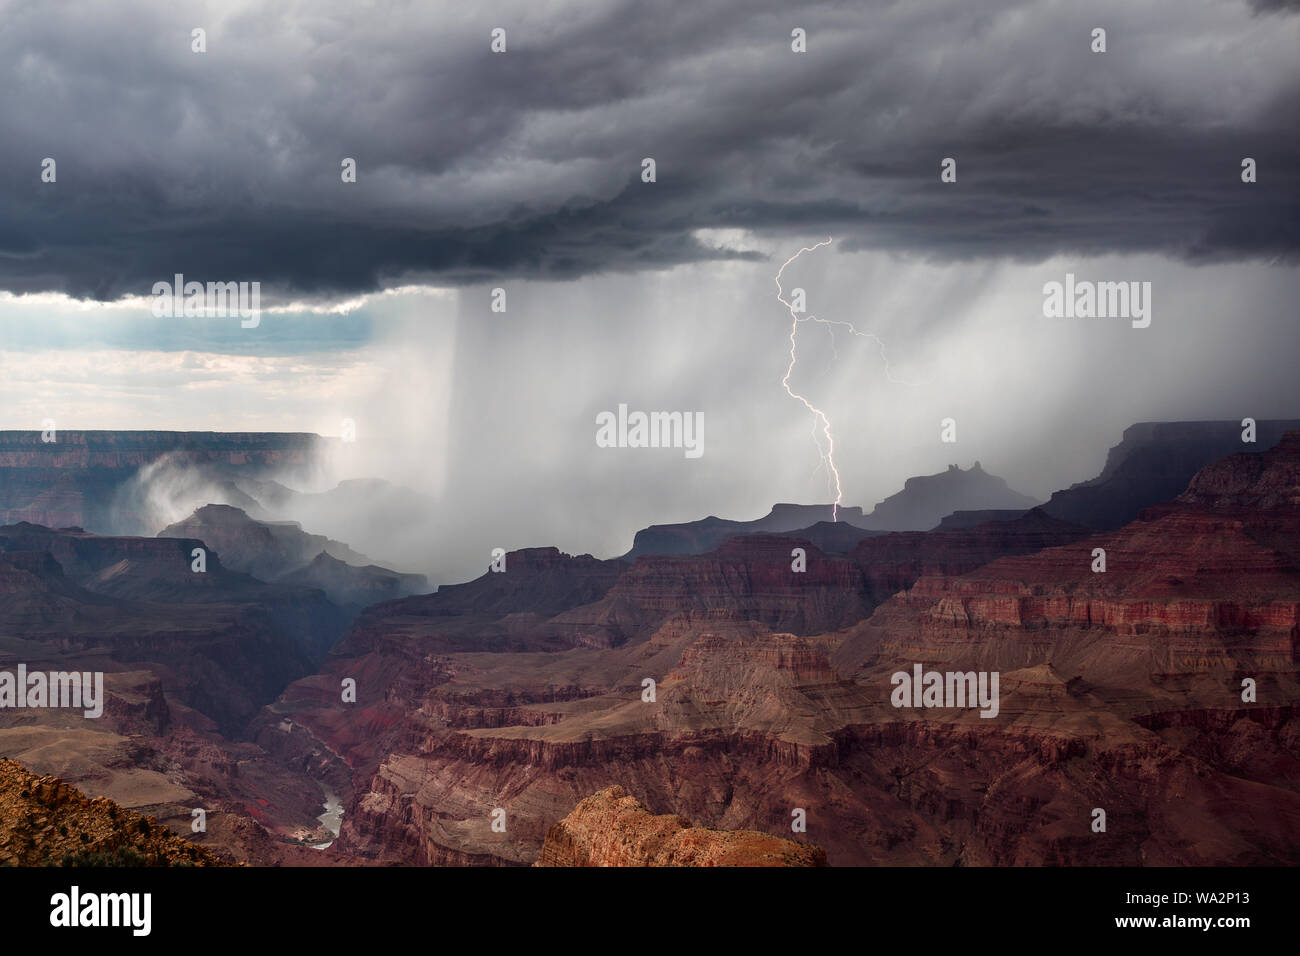 Ein Gewitter schlägt ein, während ein starkes Gewitter starken Regen über dem Grand Canyon im Grand Canyon National Park, Arizona, USA, abgibt Stockfoto